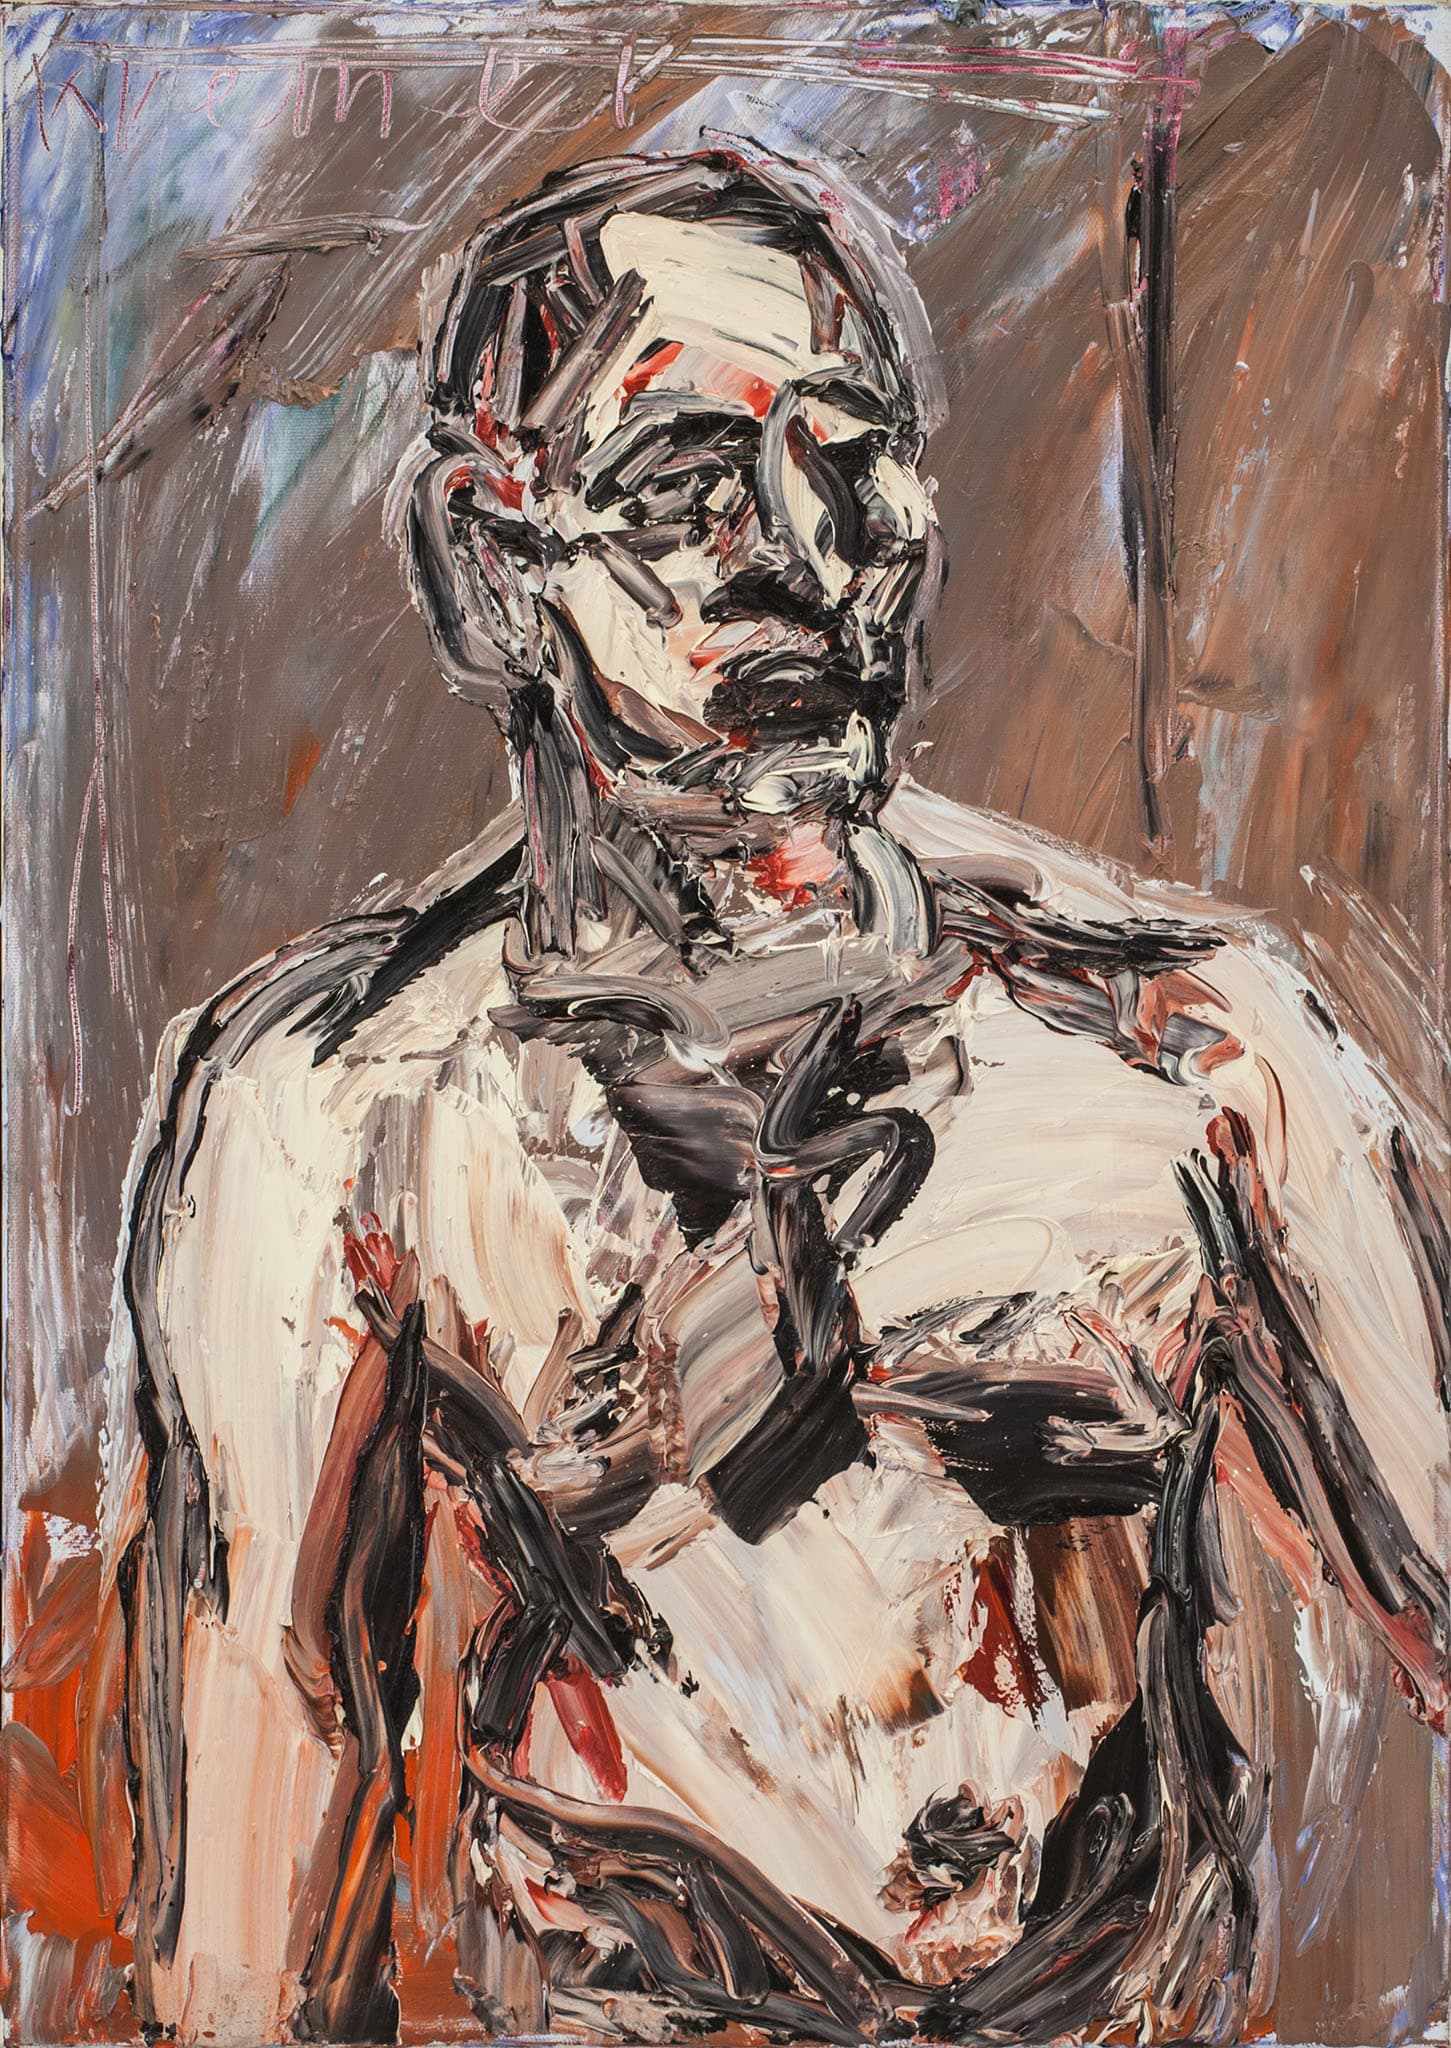 אלכס קרמר, "דיוקן", 2010, שמן על בד, 50x70 ס"מ